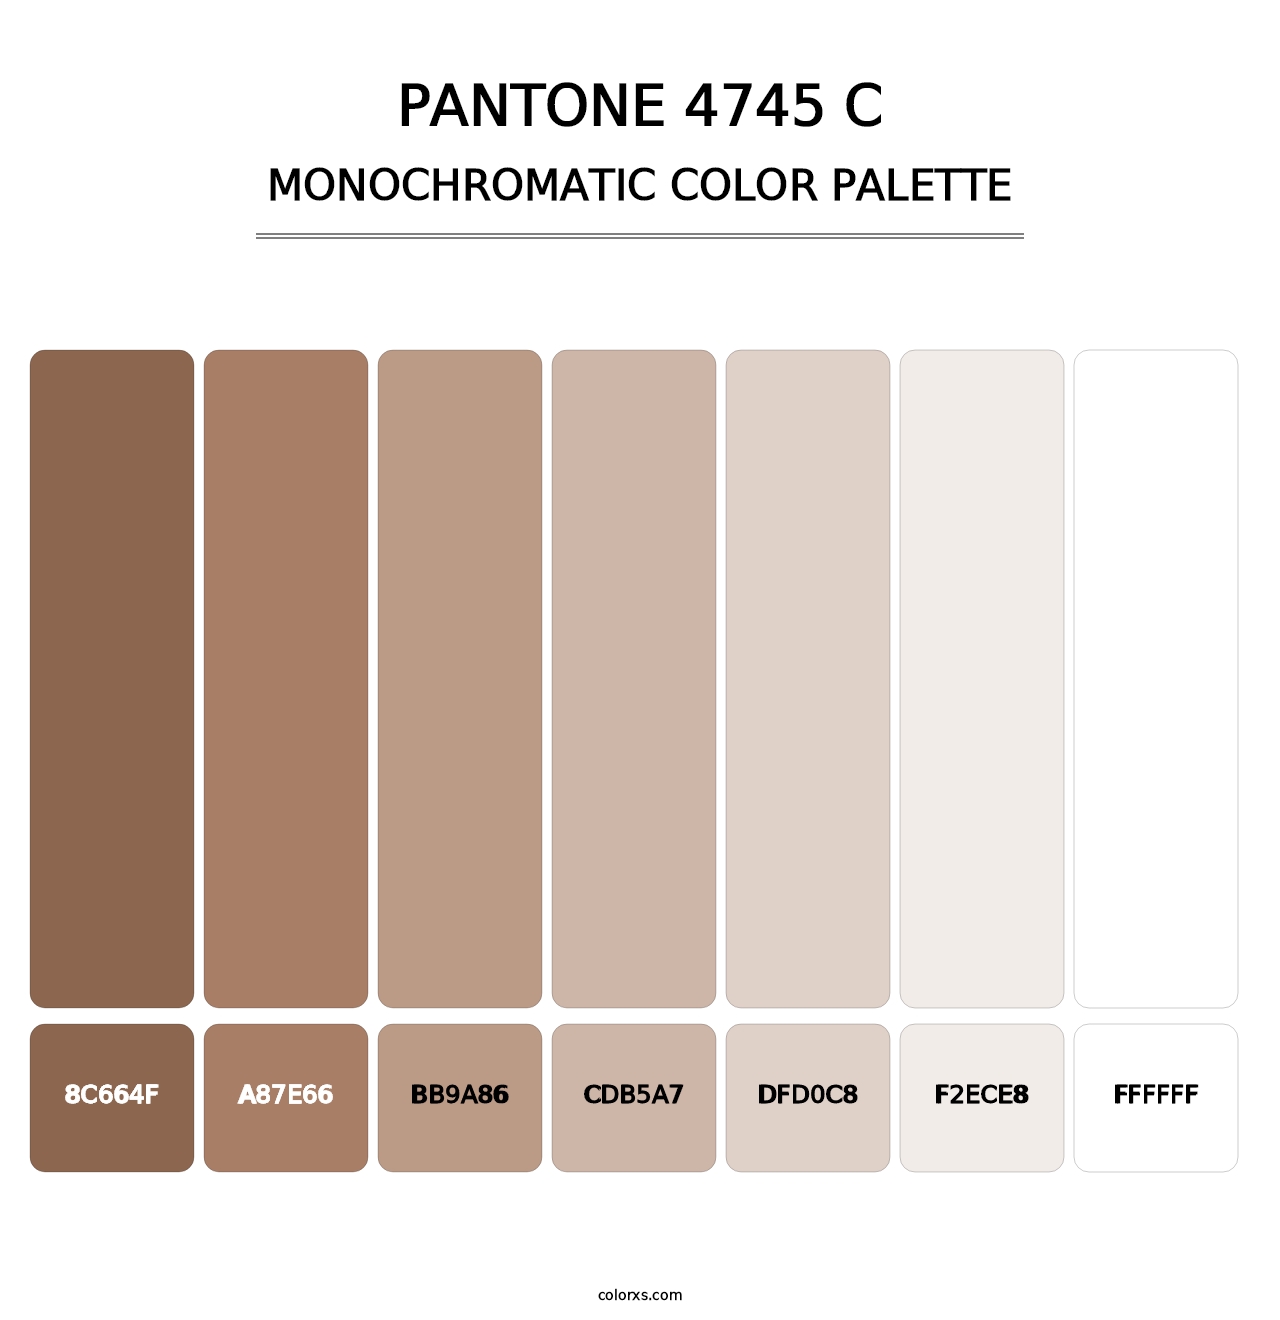 PANTONE 4745 C - Monochromatic Color Palette